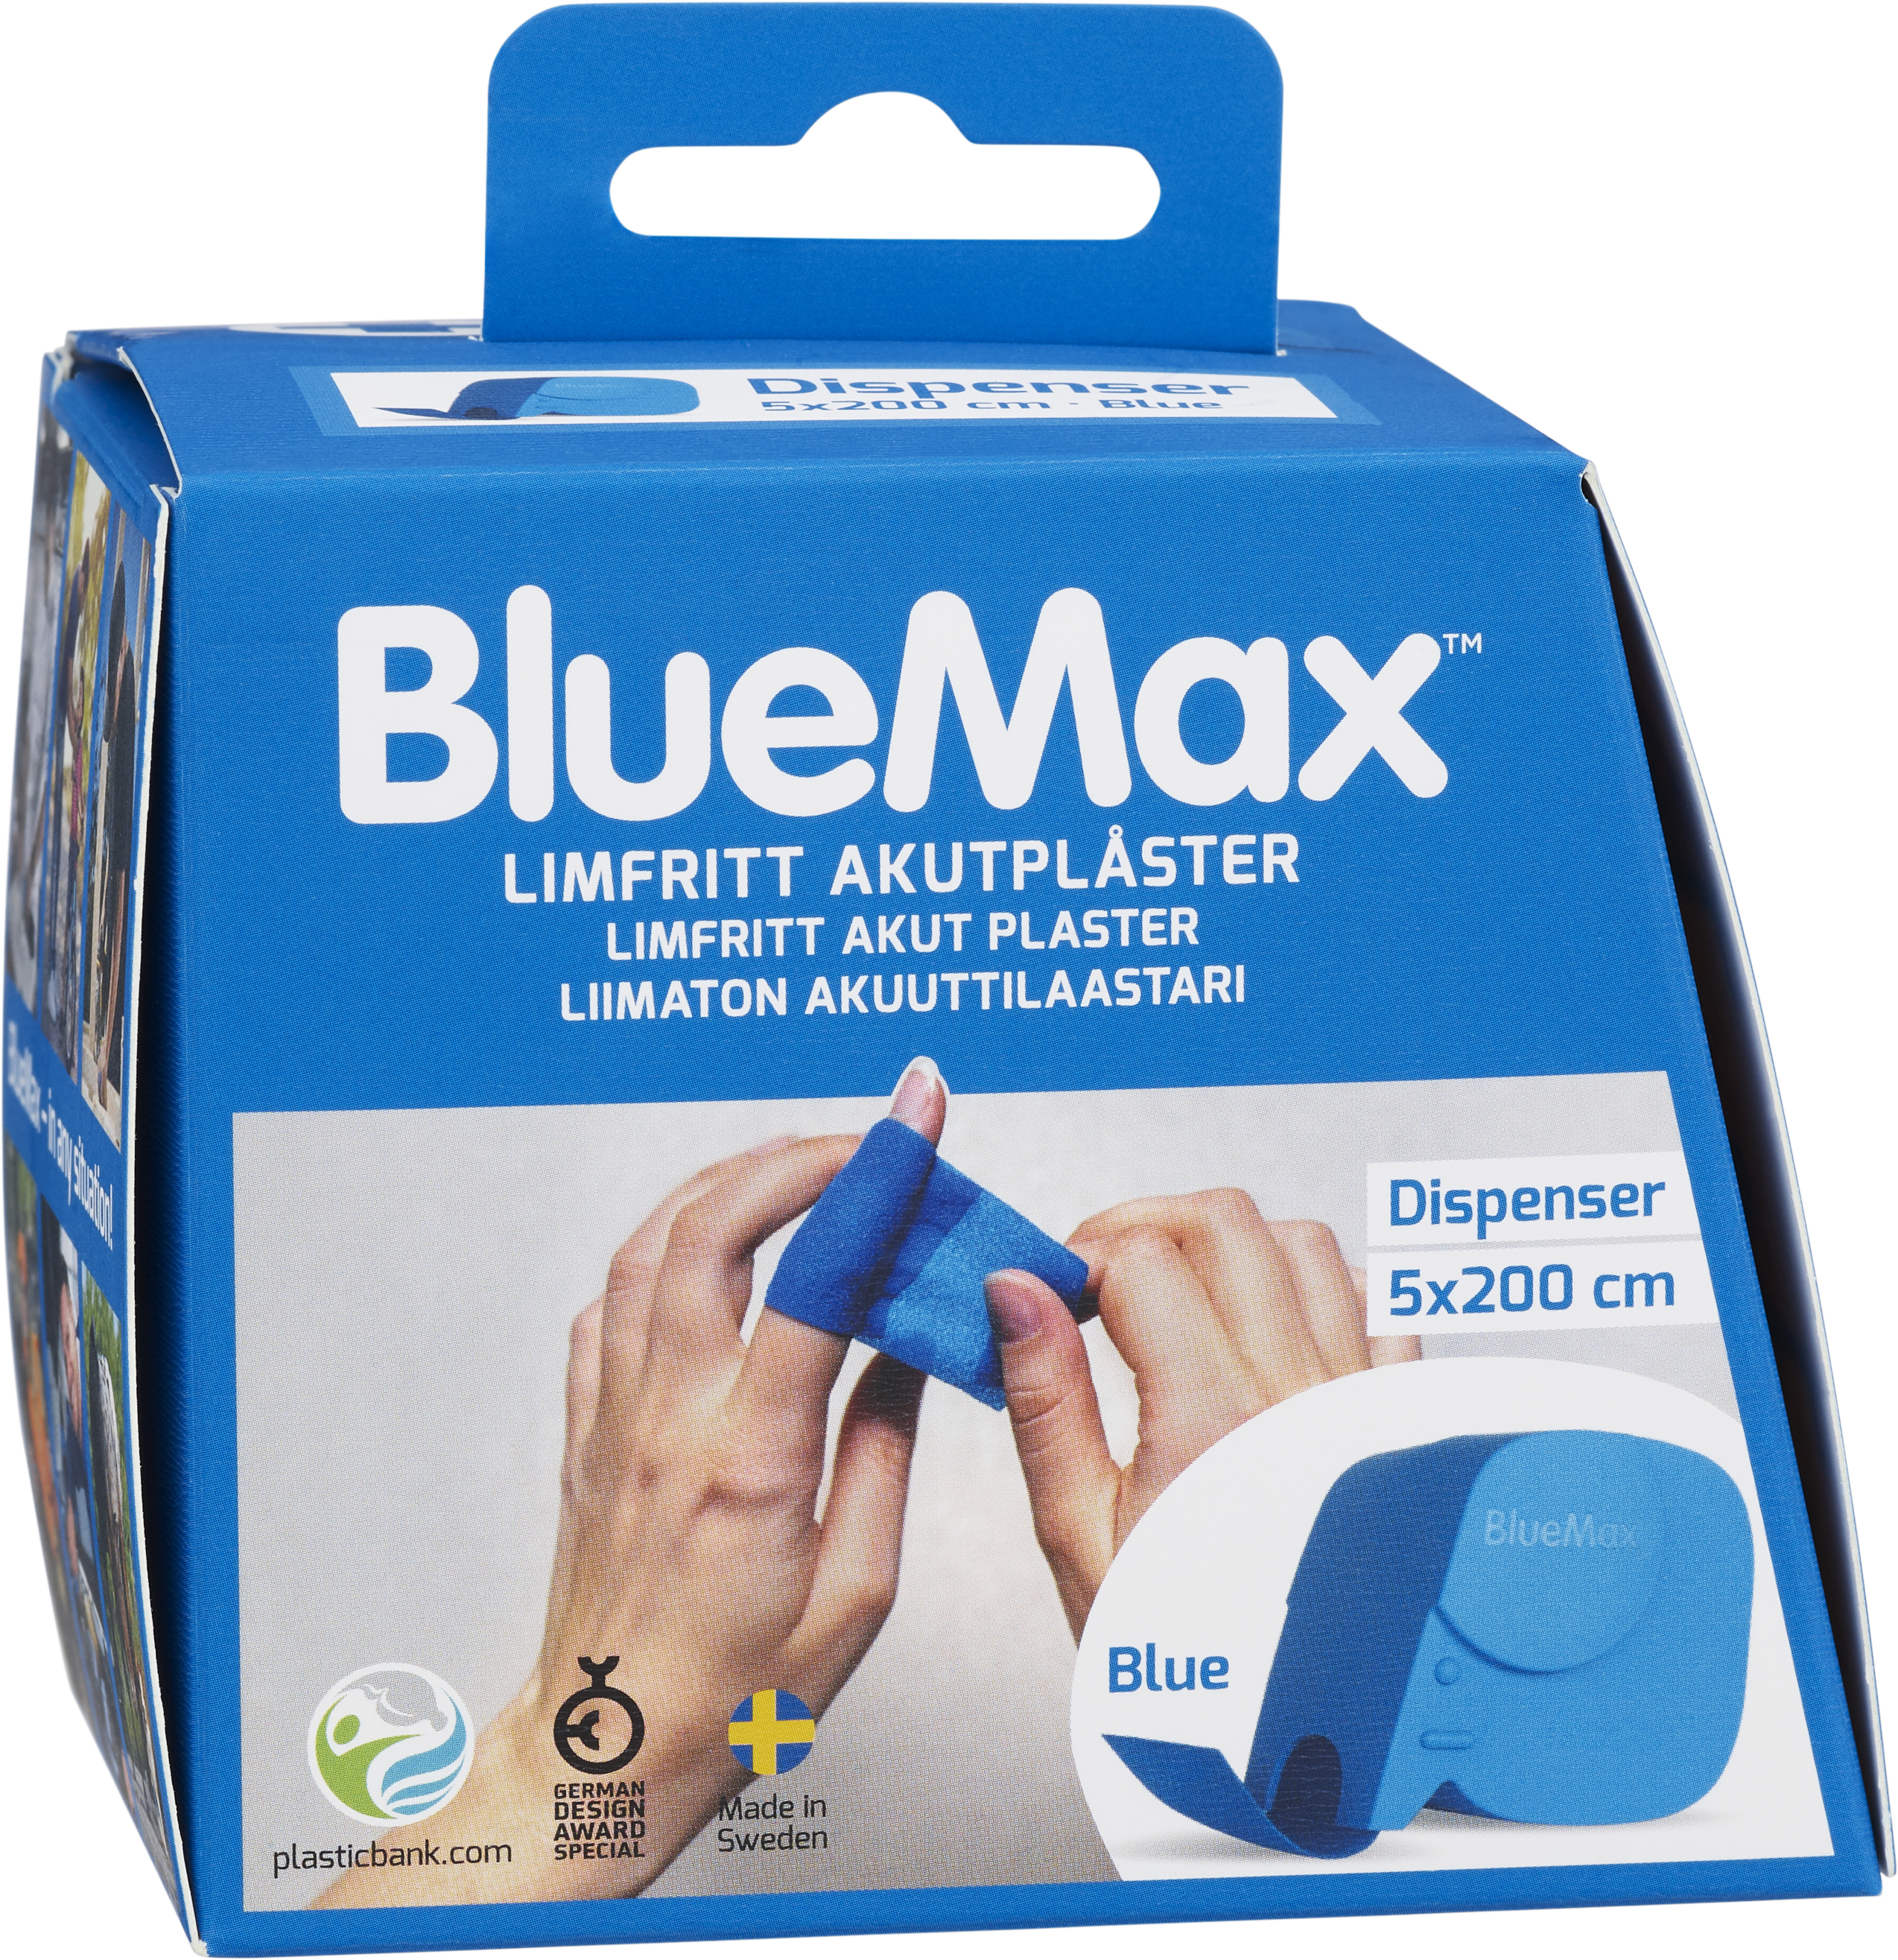 Produkt miniatyrebild BlueMax limfritt plaster med dispenser